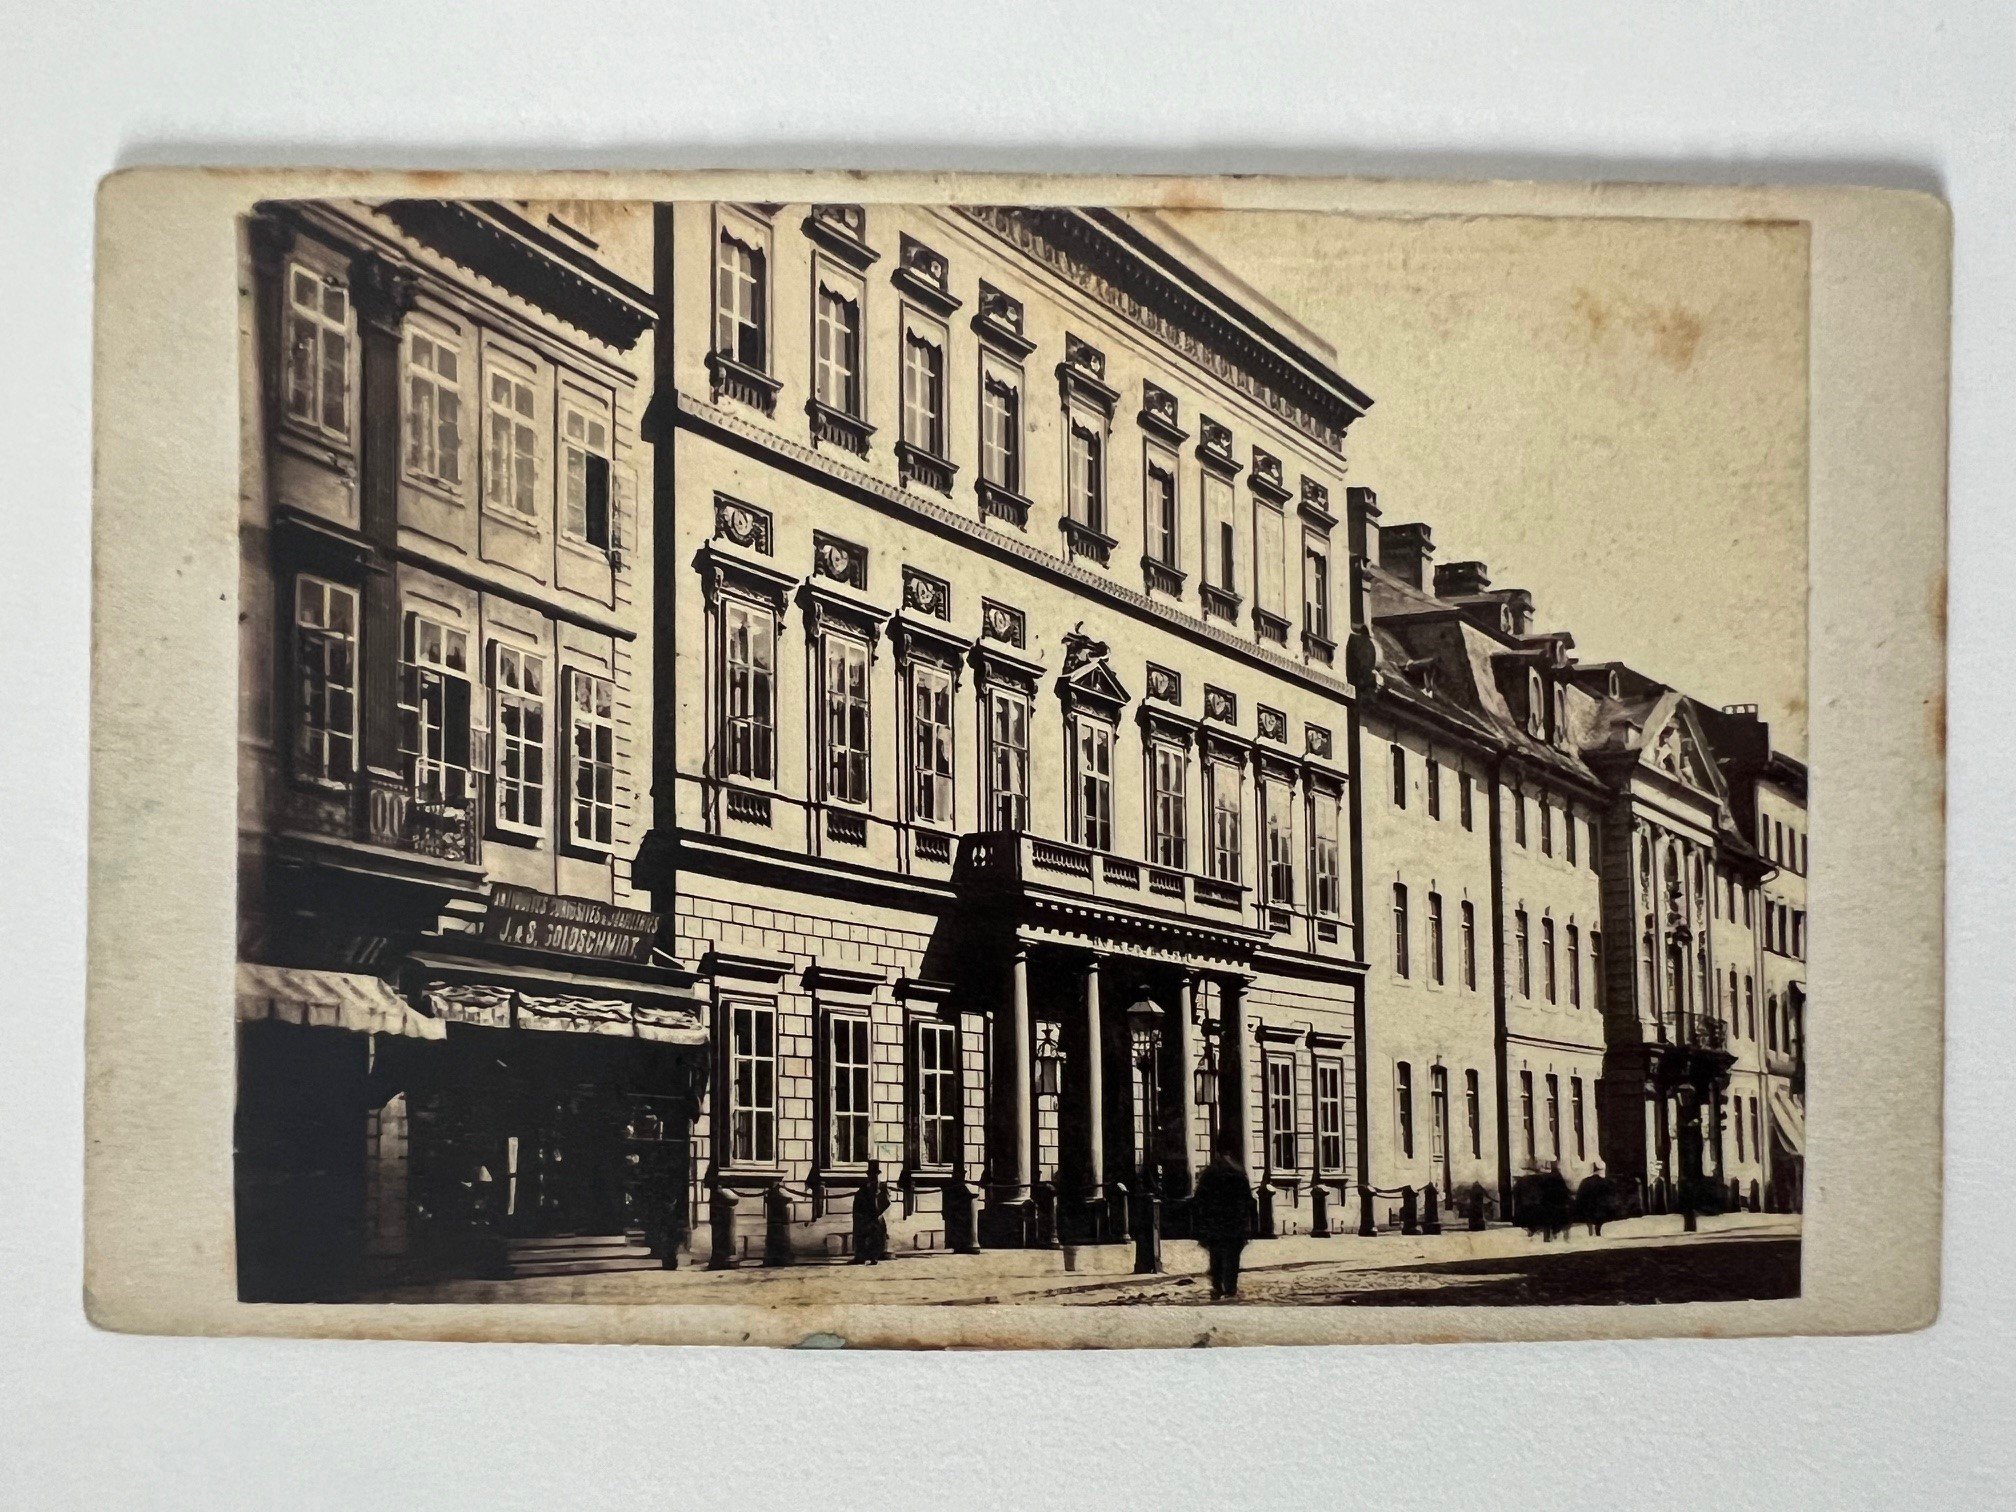 CdV, Theodor Creifelds, Frankfurt, Nr. 283, Russischer Hof, ca. 1870. (Taunus-Rhein-Main - Regionalgeschichtliche Sammlung Dr. Stefan Naas CC BY-NC-SA)